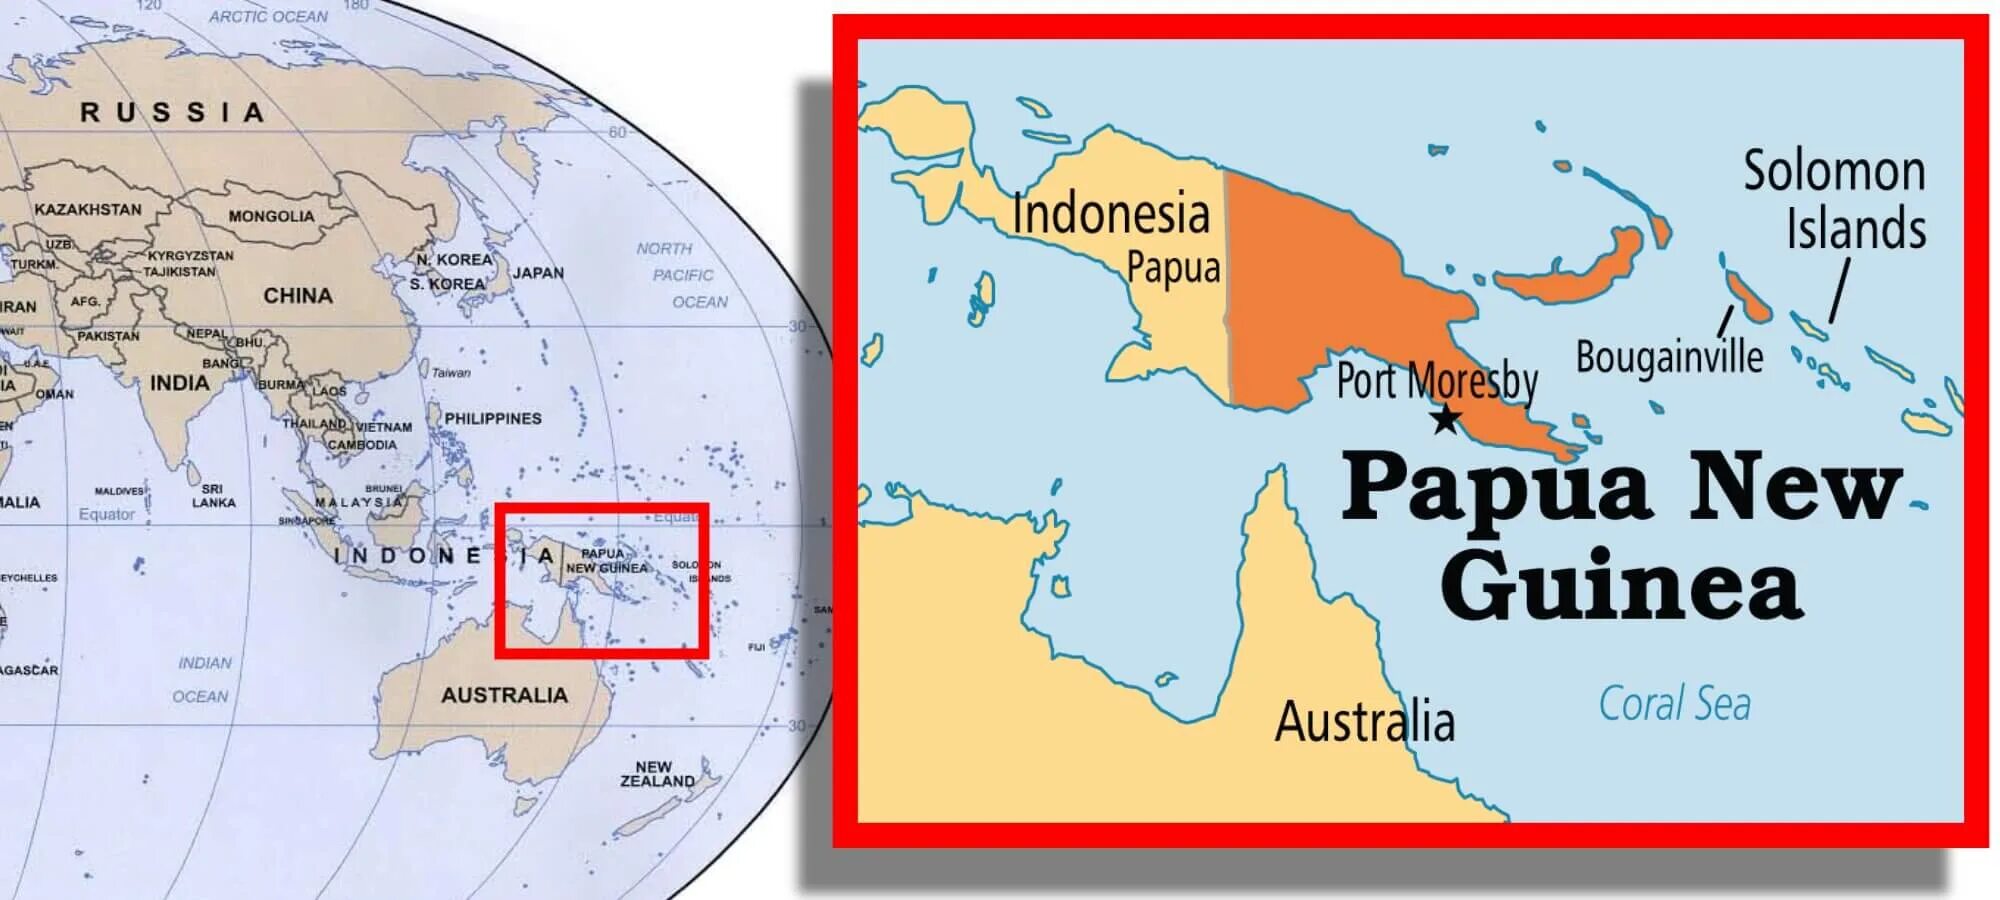 Где новый. Новая Гвинея на карте. Папуа новая Гвинея на карте мира. Остров Папуа новая Гвинея на карте. Карта мира Папуа новая Гвинея на карте.